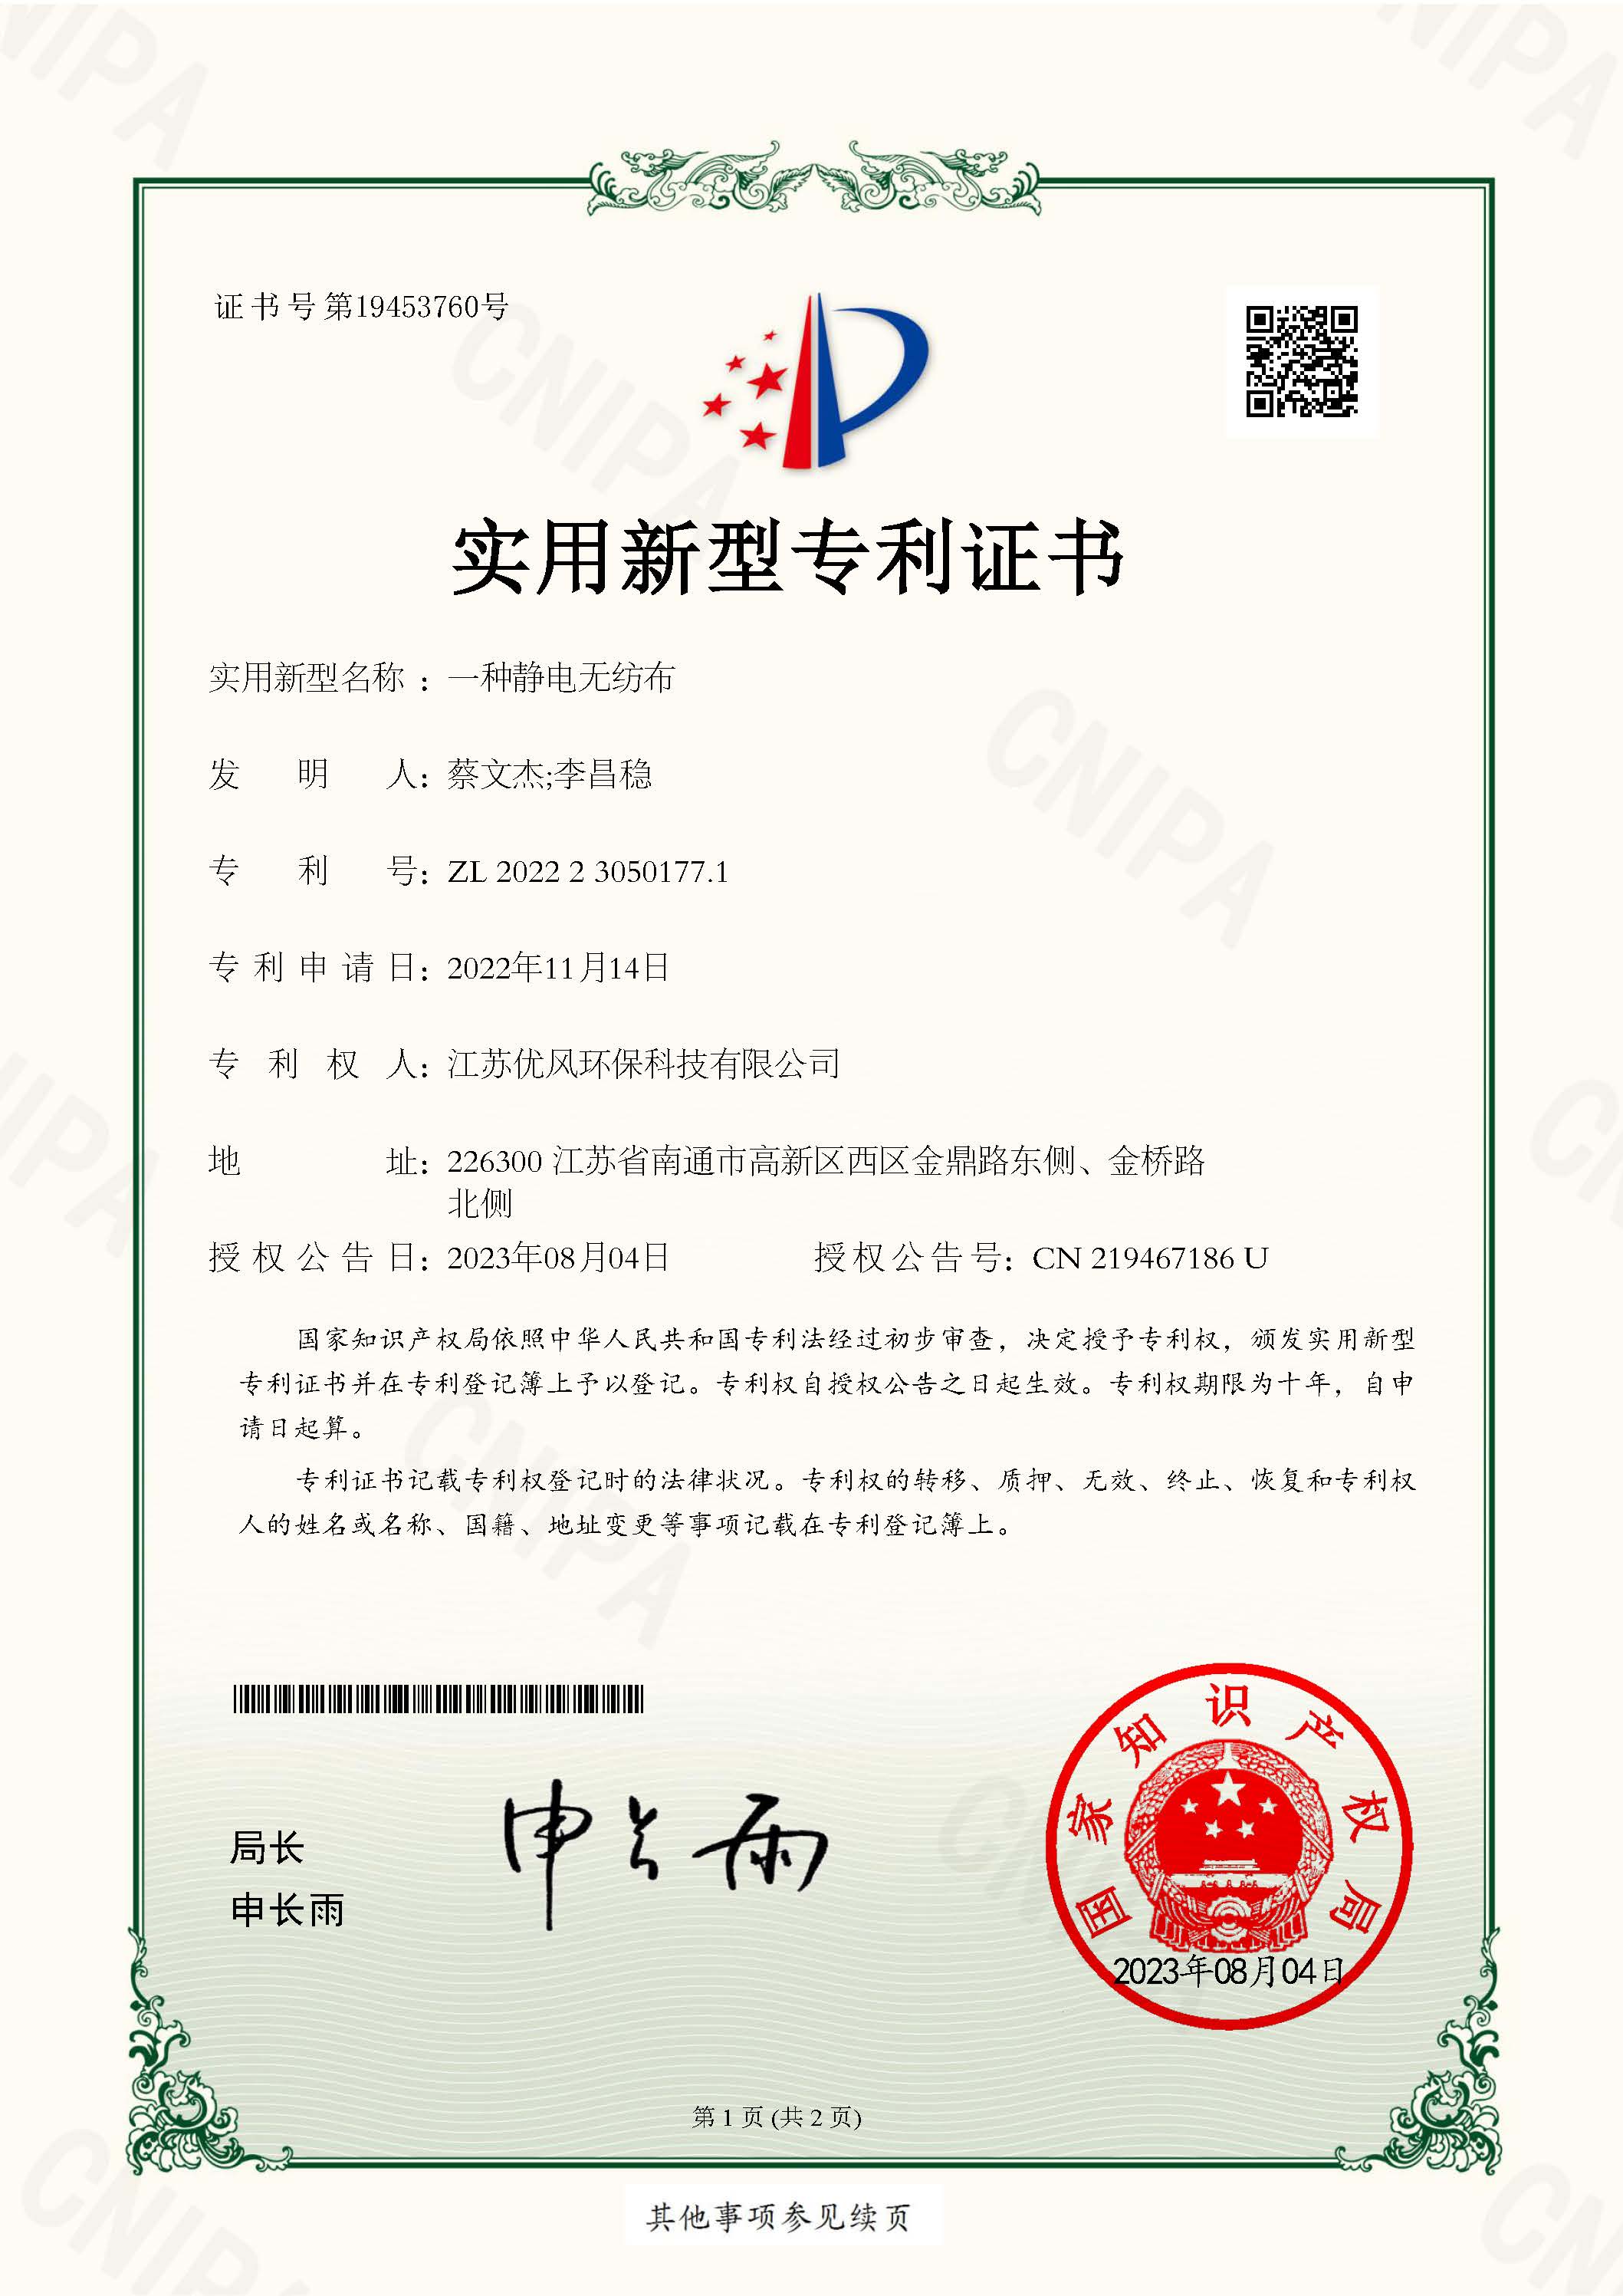 certificado3